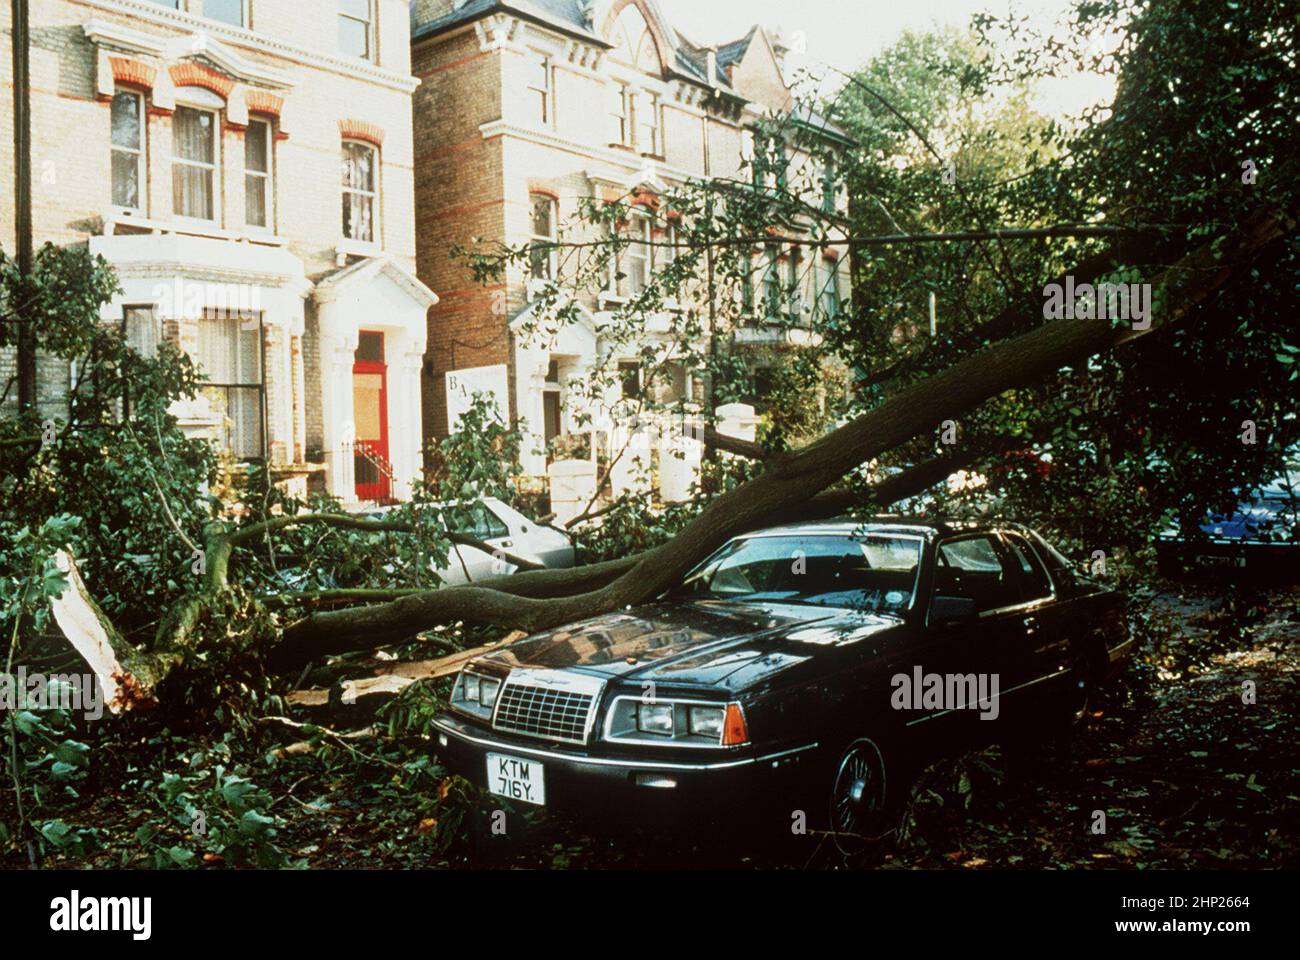 Aktenfoto vom 16/10/1987 von Hurrikan-Schäden in London nach dem Großen Sturm von 1987. Ausgabedatum: Freitag, 18. Februar 2022. Stockfoto